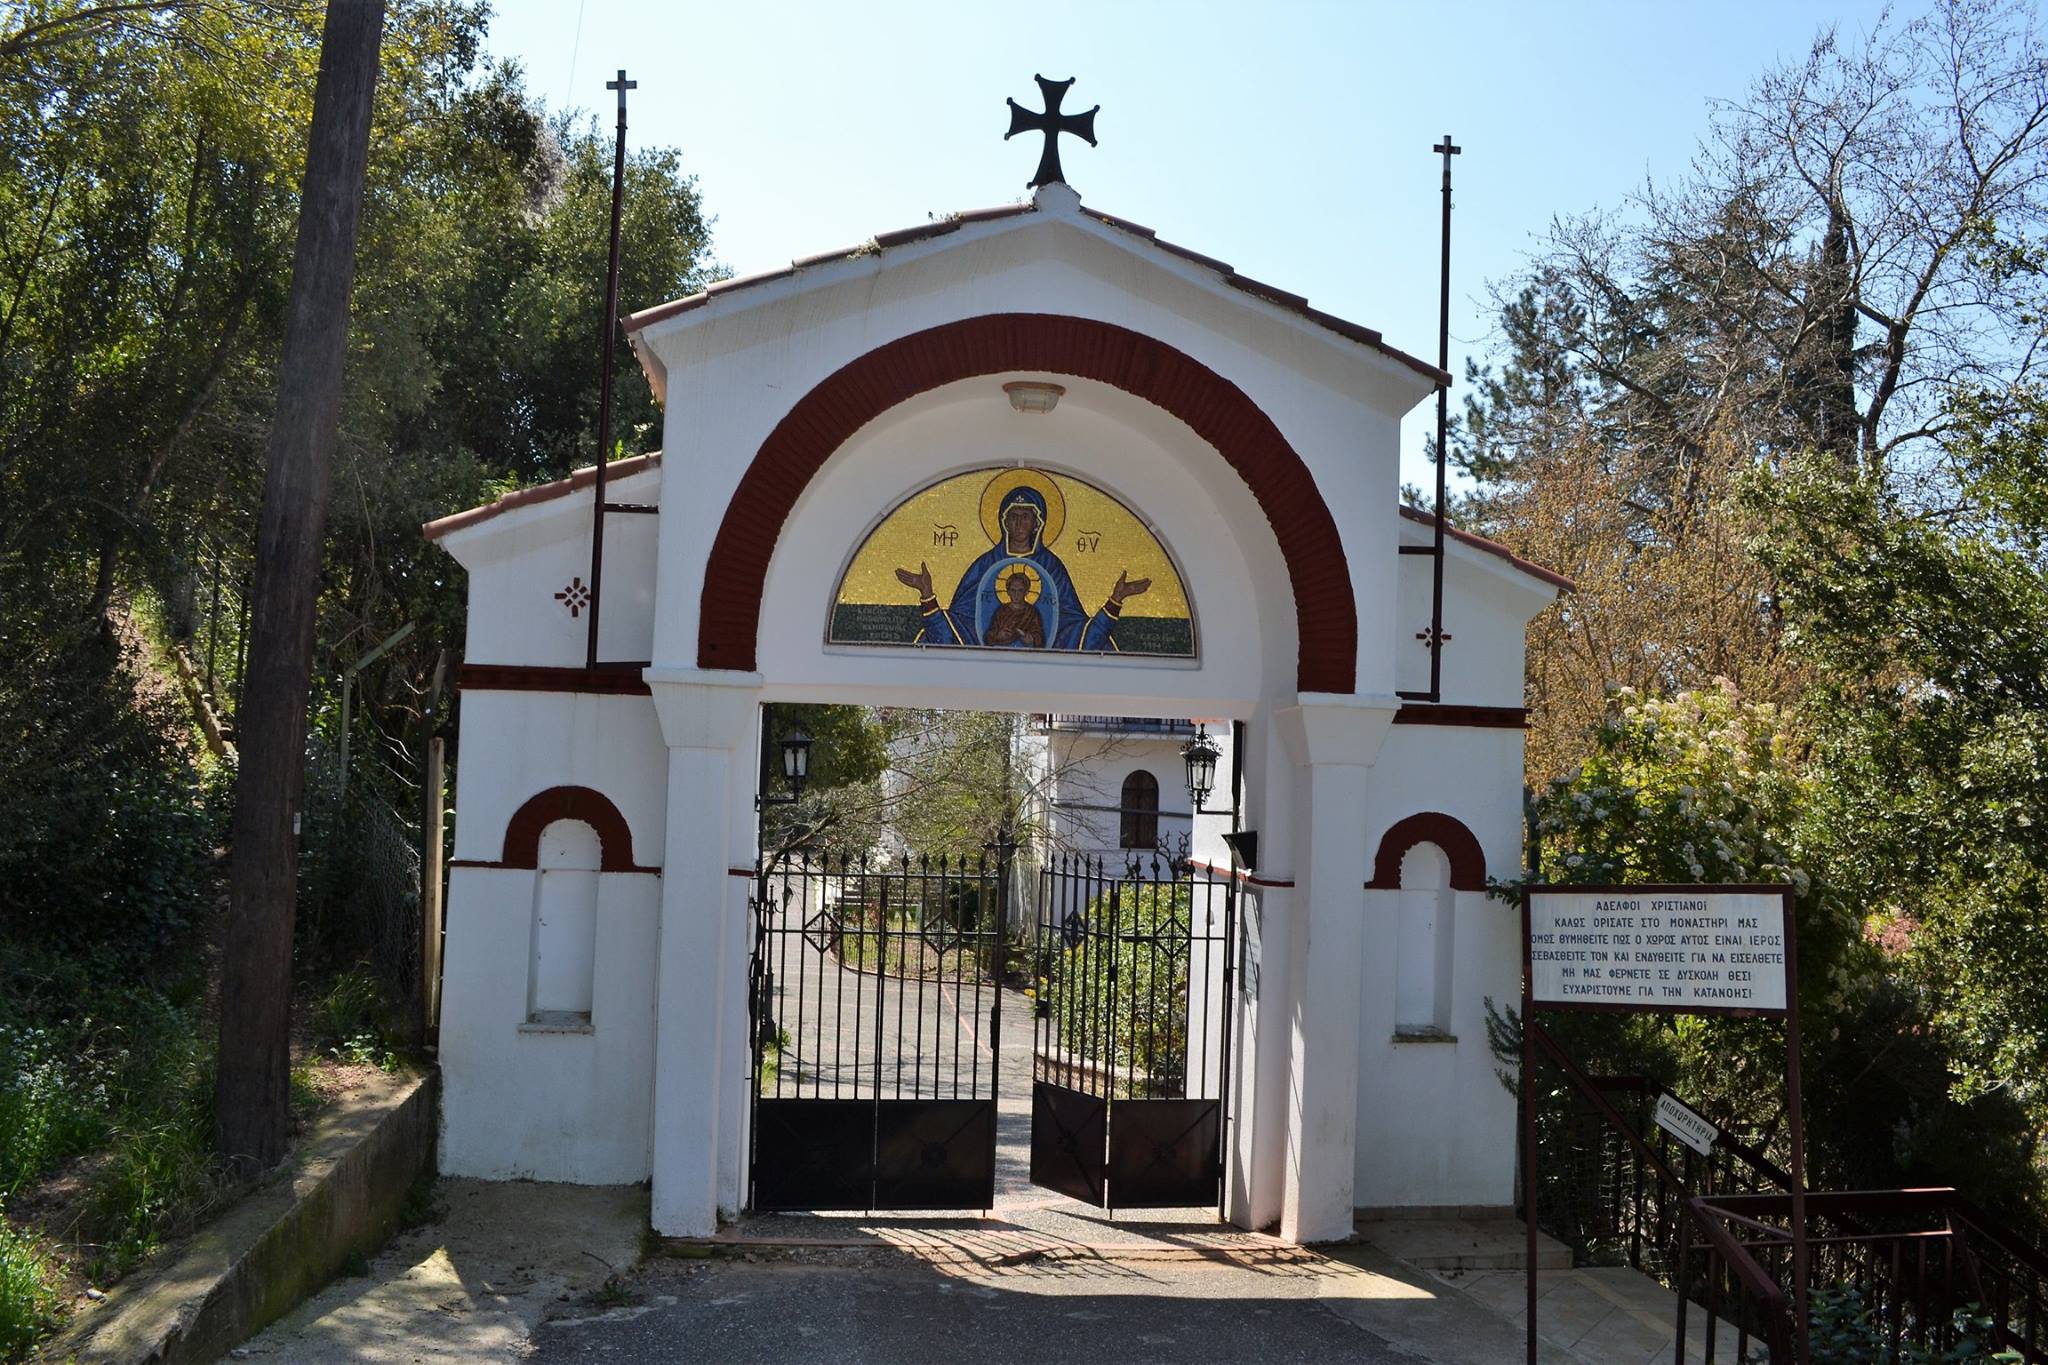 Το ιστορικό μοναστήρι της Τατάρνας, αποτελεί ένα από τα σπουδαιότερα μοναστήρια της Στερεάς Ελλάδας.